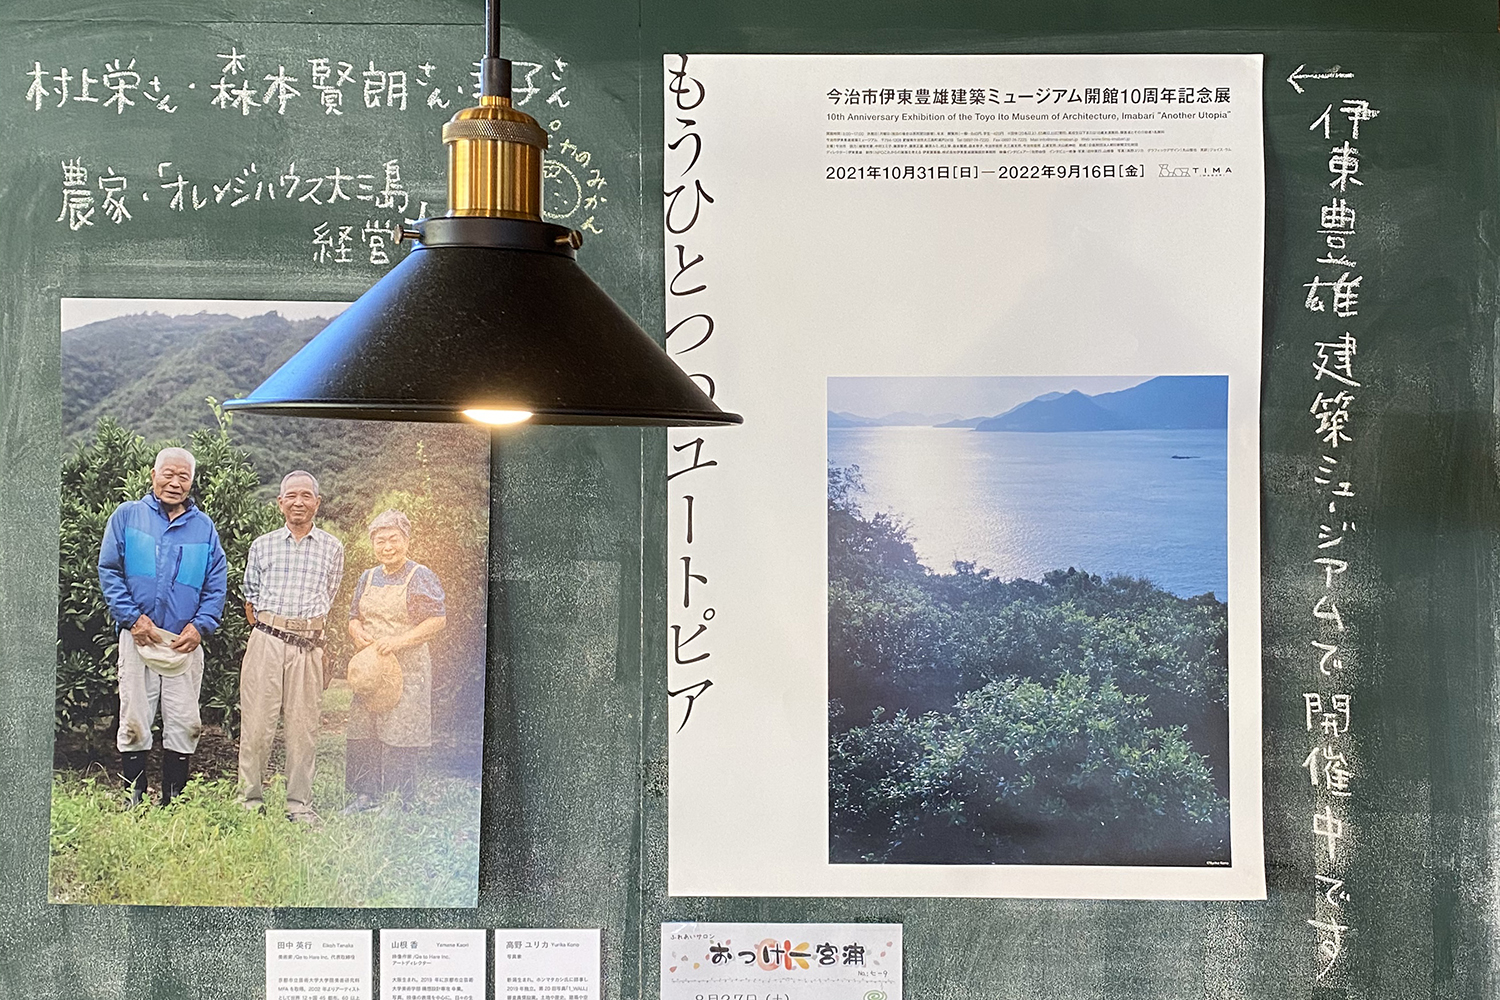 Toyo Ito Museum of Architecture, Imabari Exhibition 2021